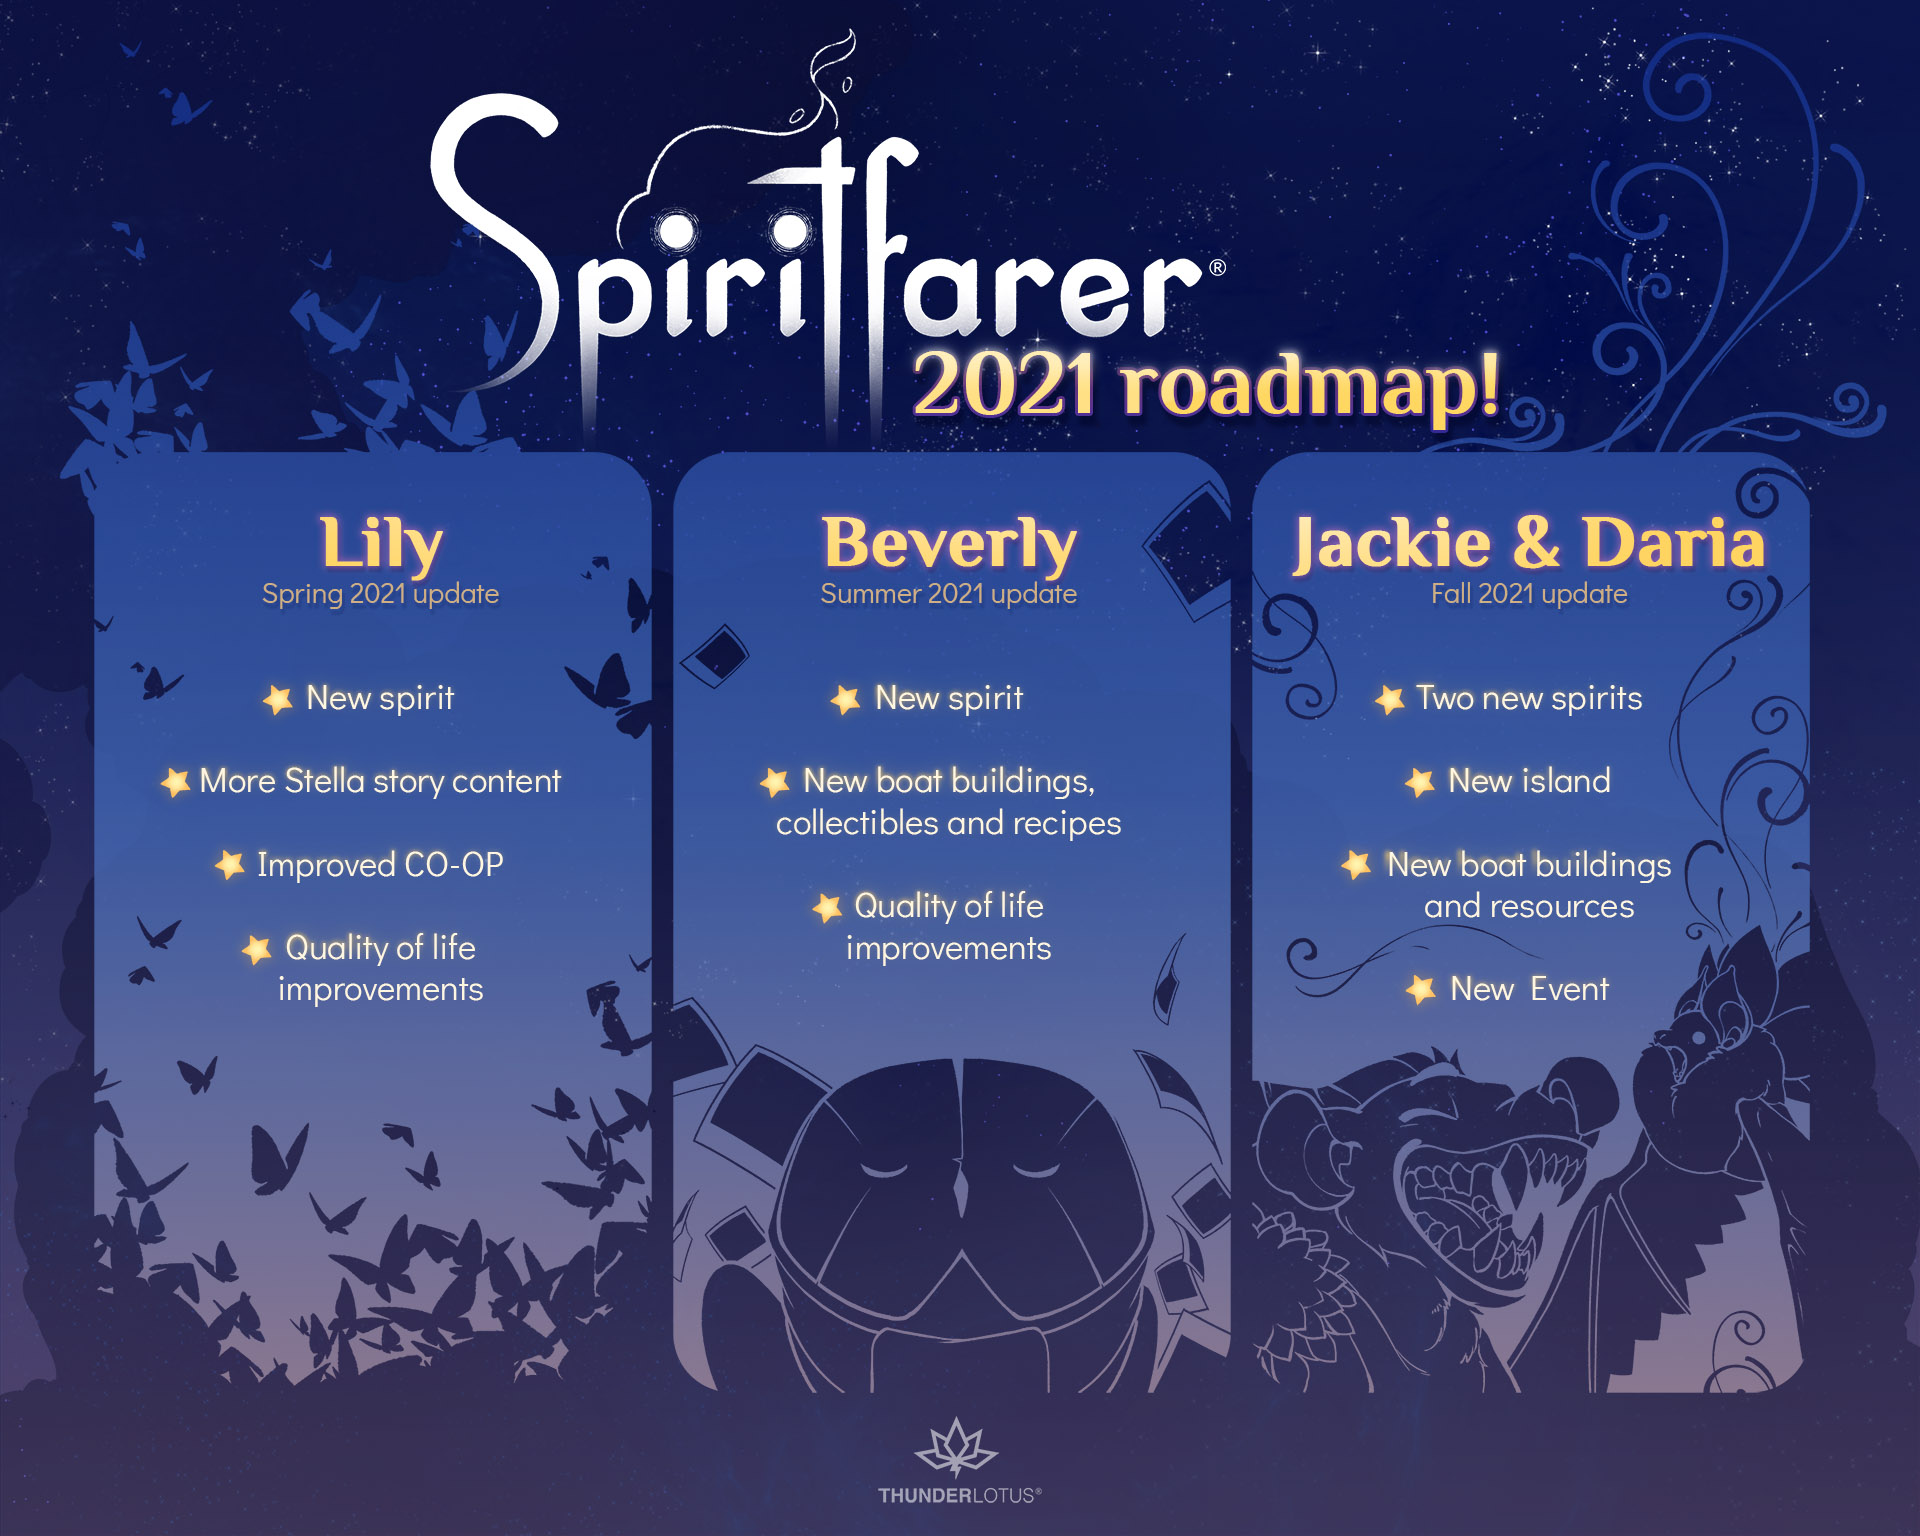 Spiritfarer post-launch update roadmap announced